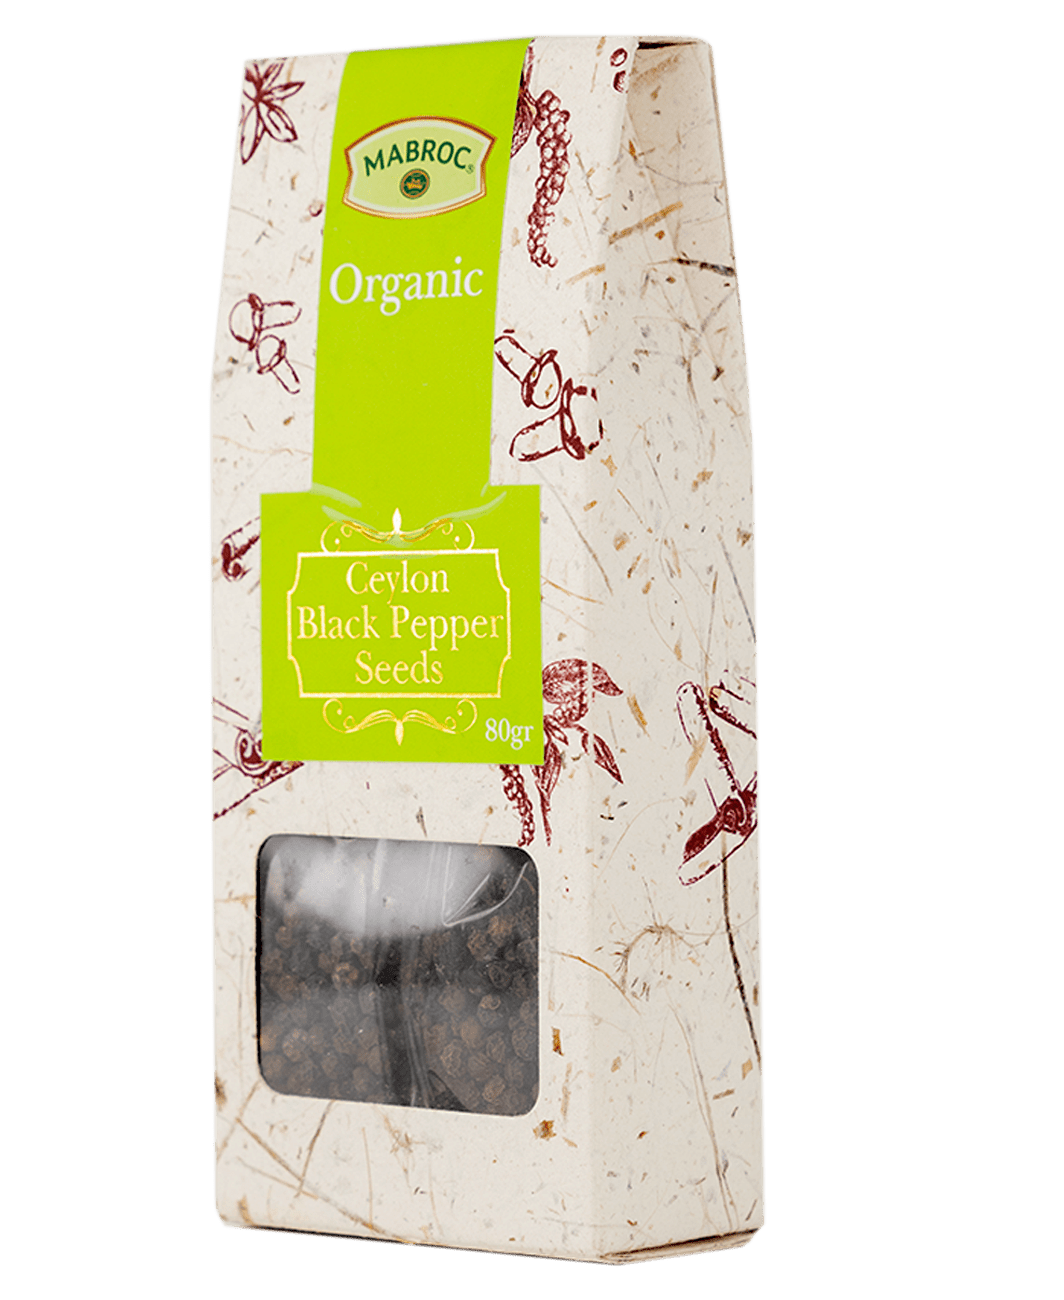 Fruity Range | Minty Lemon Green Tea | 25 Tea Bags